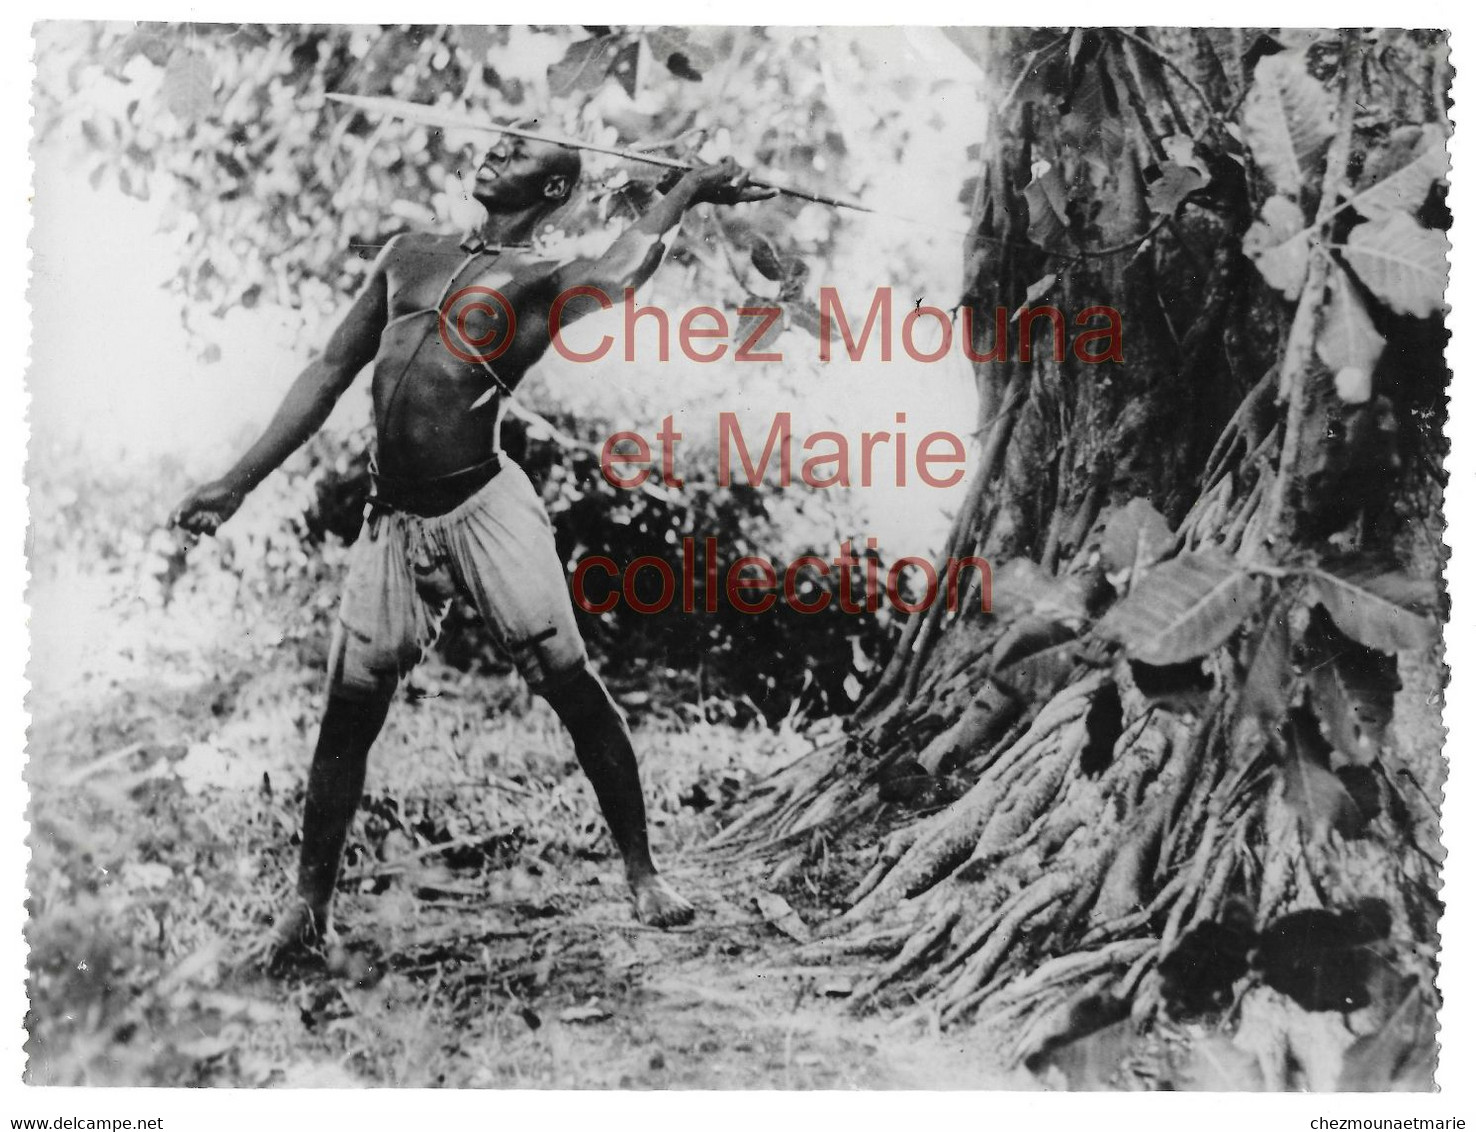 COTE D IVOIRE - INDIGENE ETHNIE HOMME NU CHASSEUR - PHOTO 24*18 CM AFRIQUE - Afrique